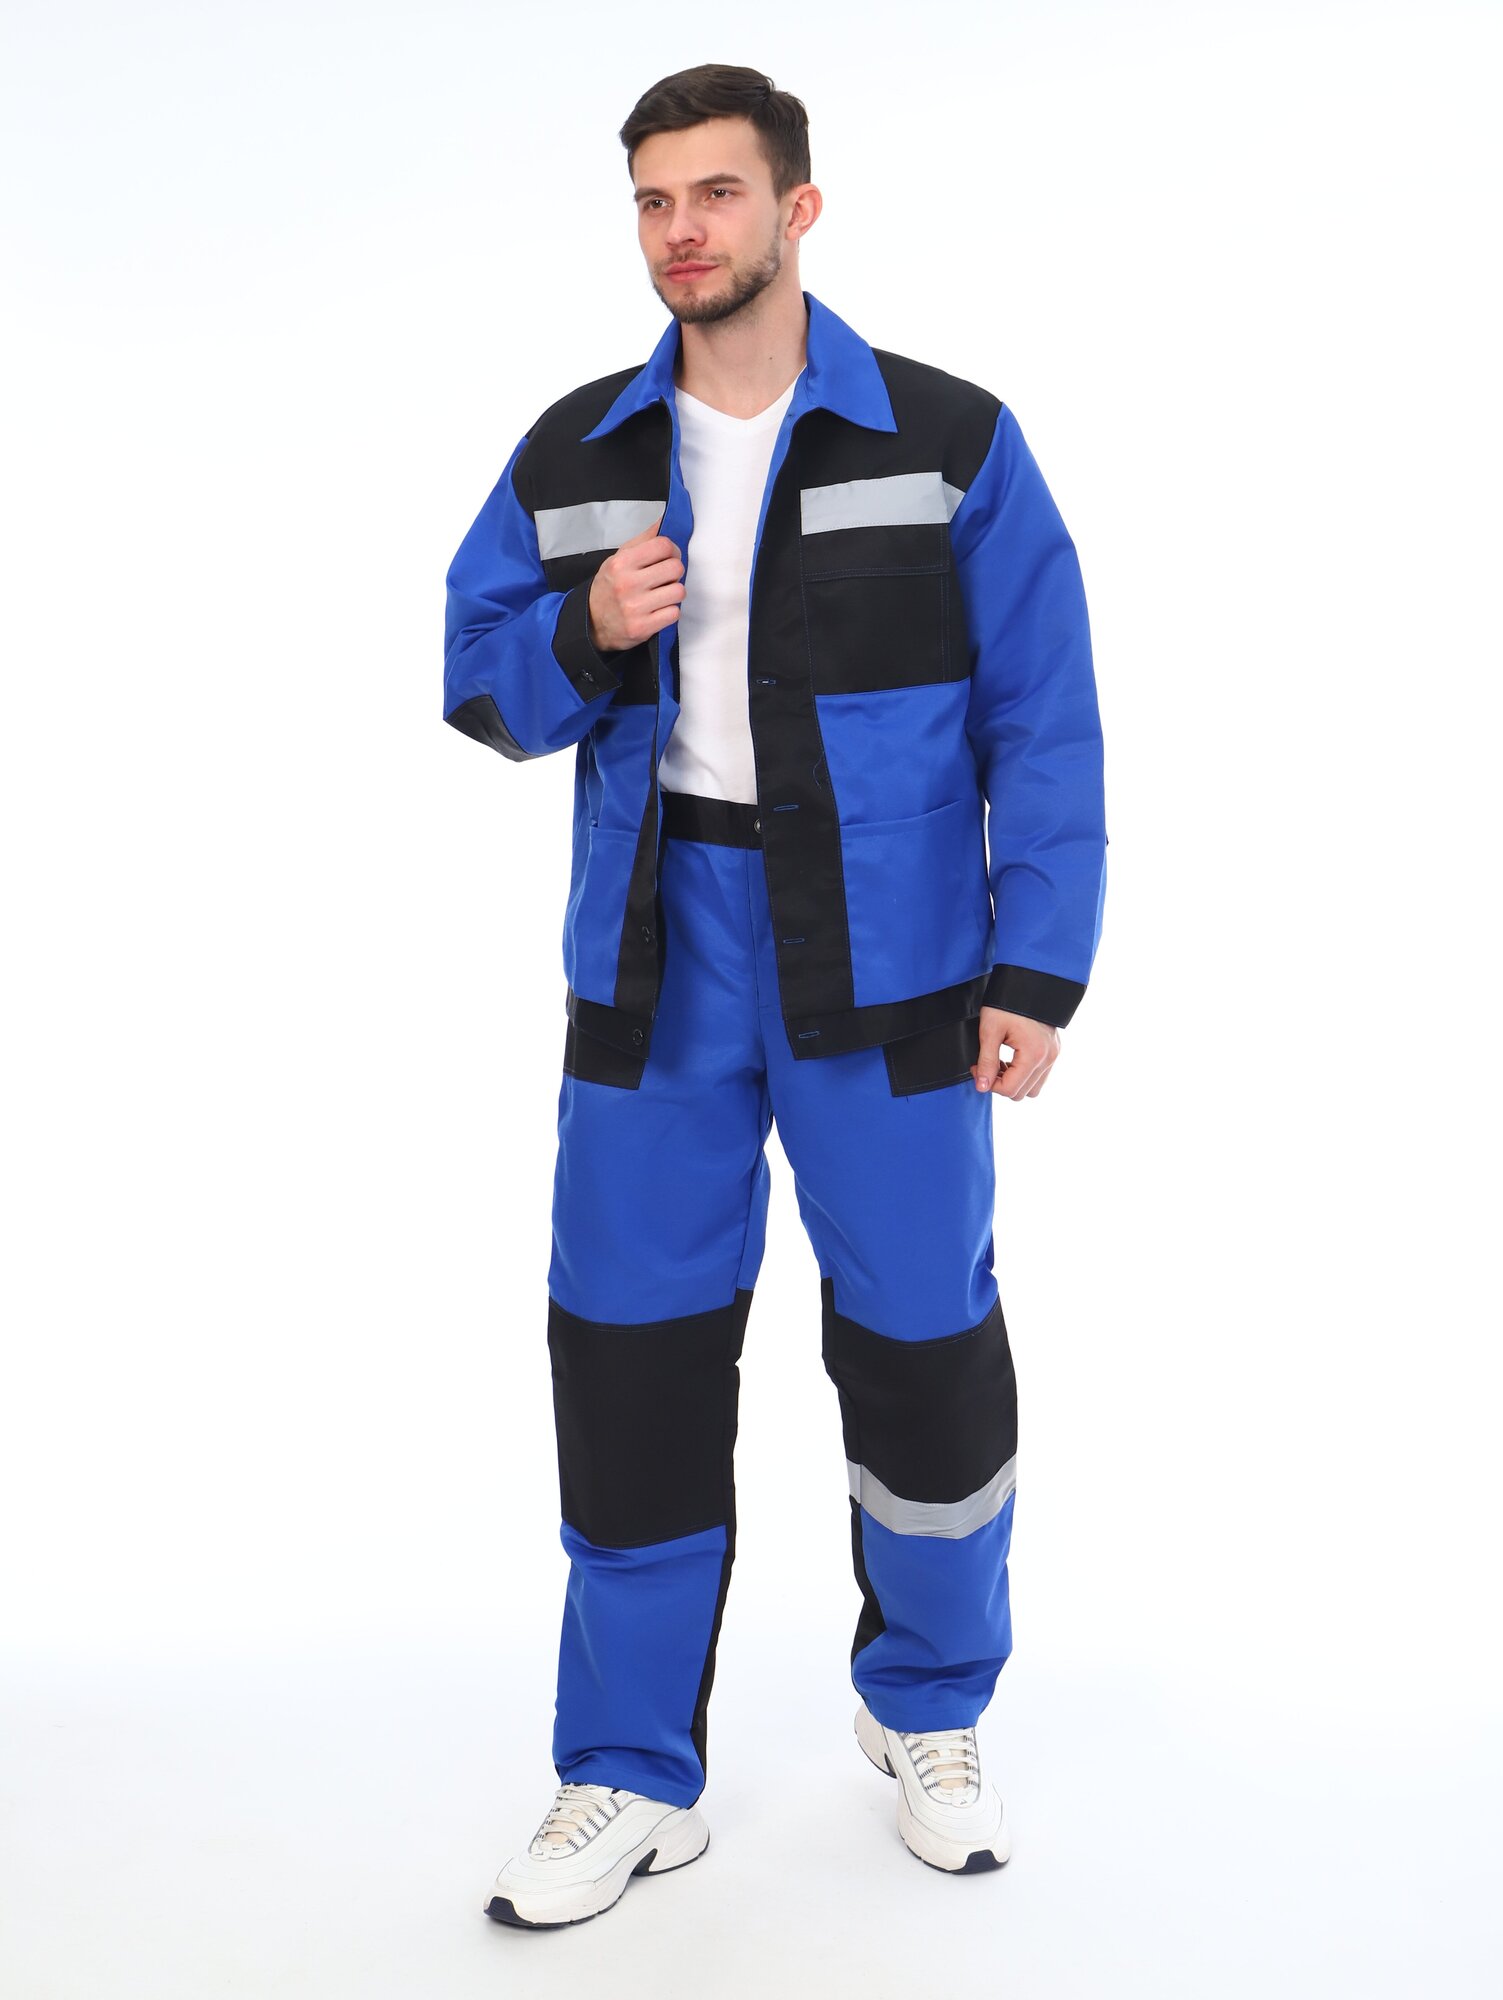 Костюм мужской рабочий (куртка + брюки), спецовка для ремонта, строительства, дачи, цвет синий/черный, размер 60-62 (170-176)